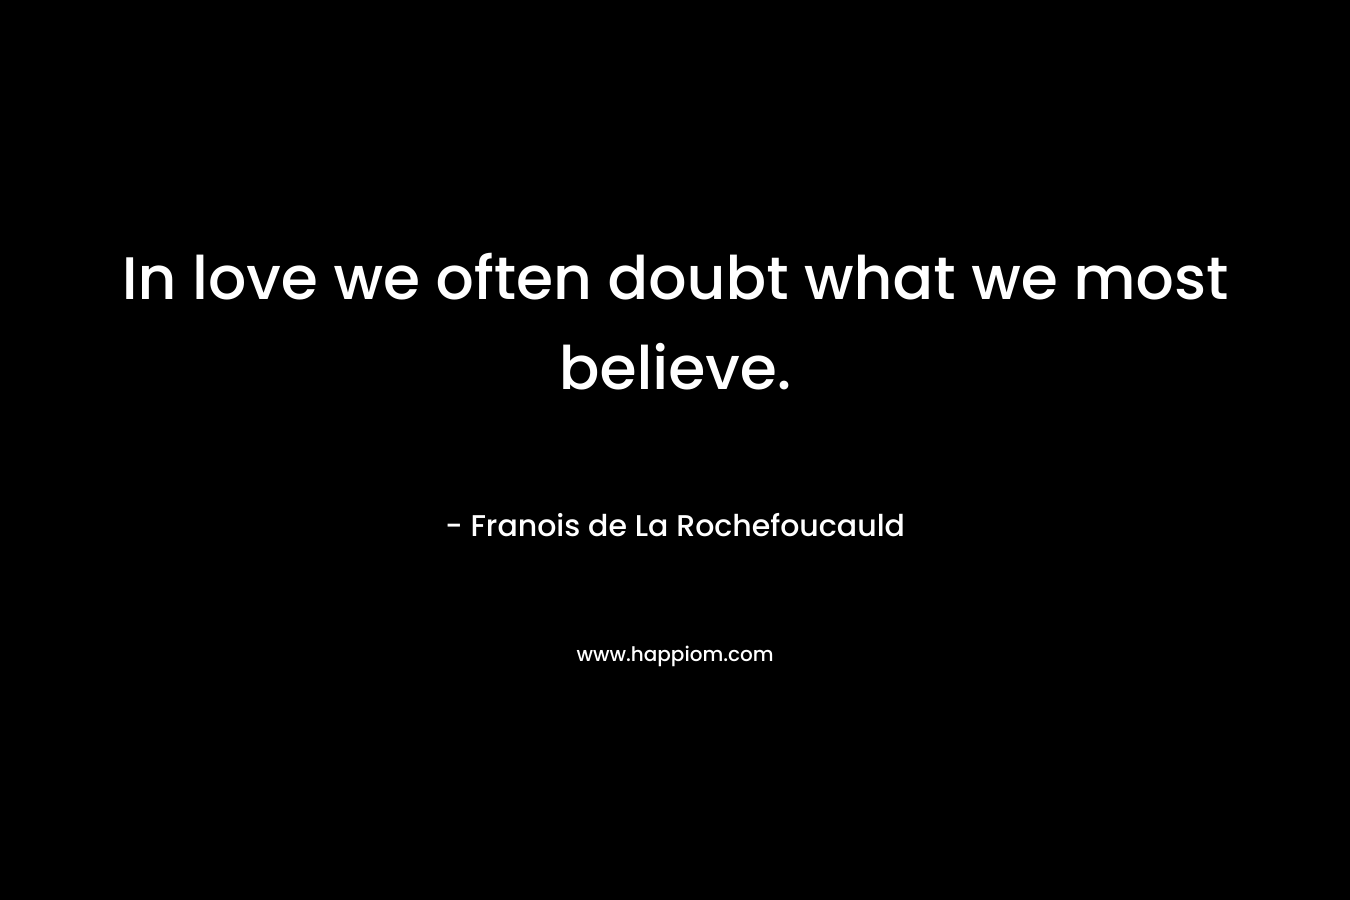 In love we often doubt what we most believe. – Franois de La Rochefoucauld